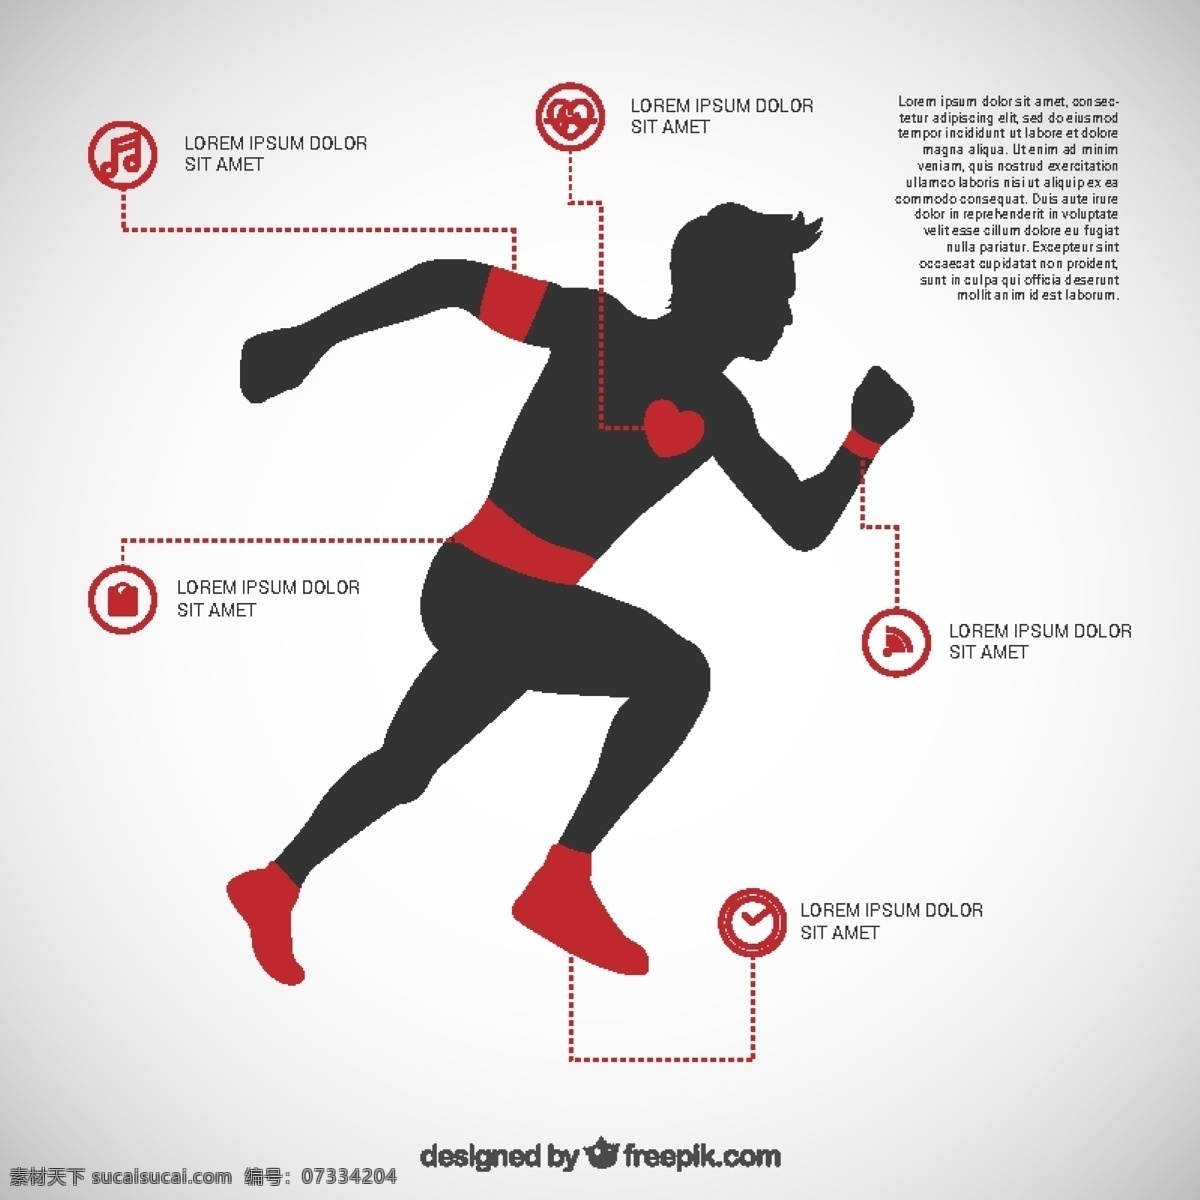 人的信息图表 图表 人 运动 模板 剪影 跑步 健康 人的轮廓 生活方式 身影 轮廓 图表模板 白色